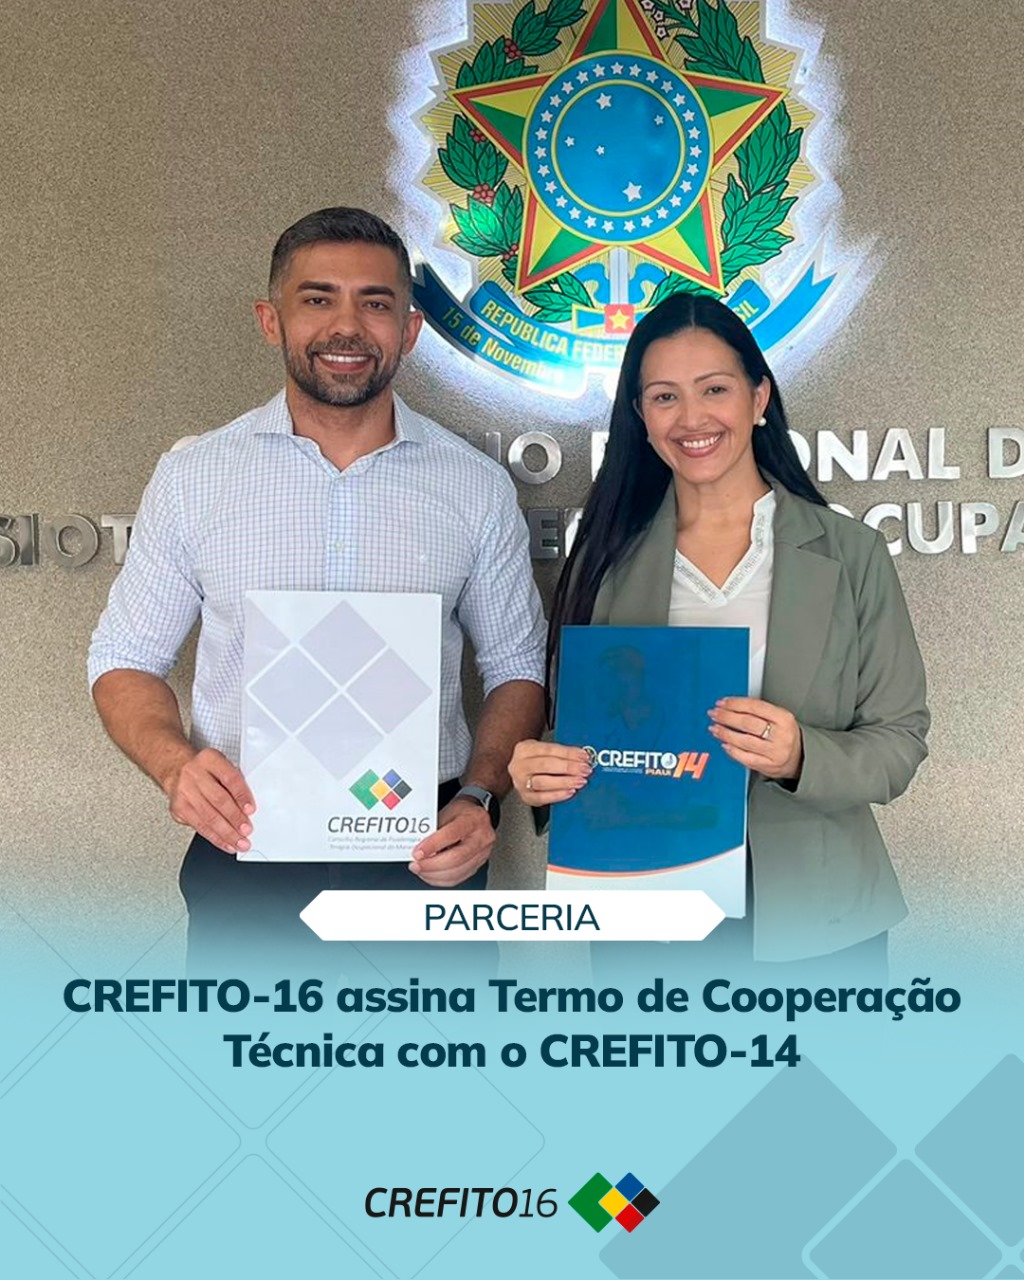 CREFITO14 - Conselho Regional de Fisioterapia e Terapia Ocupacional da 14ª  Região